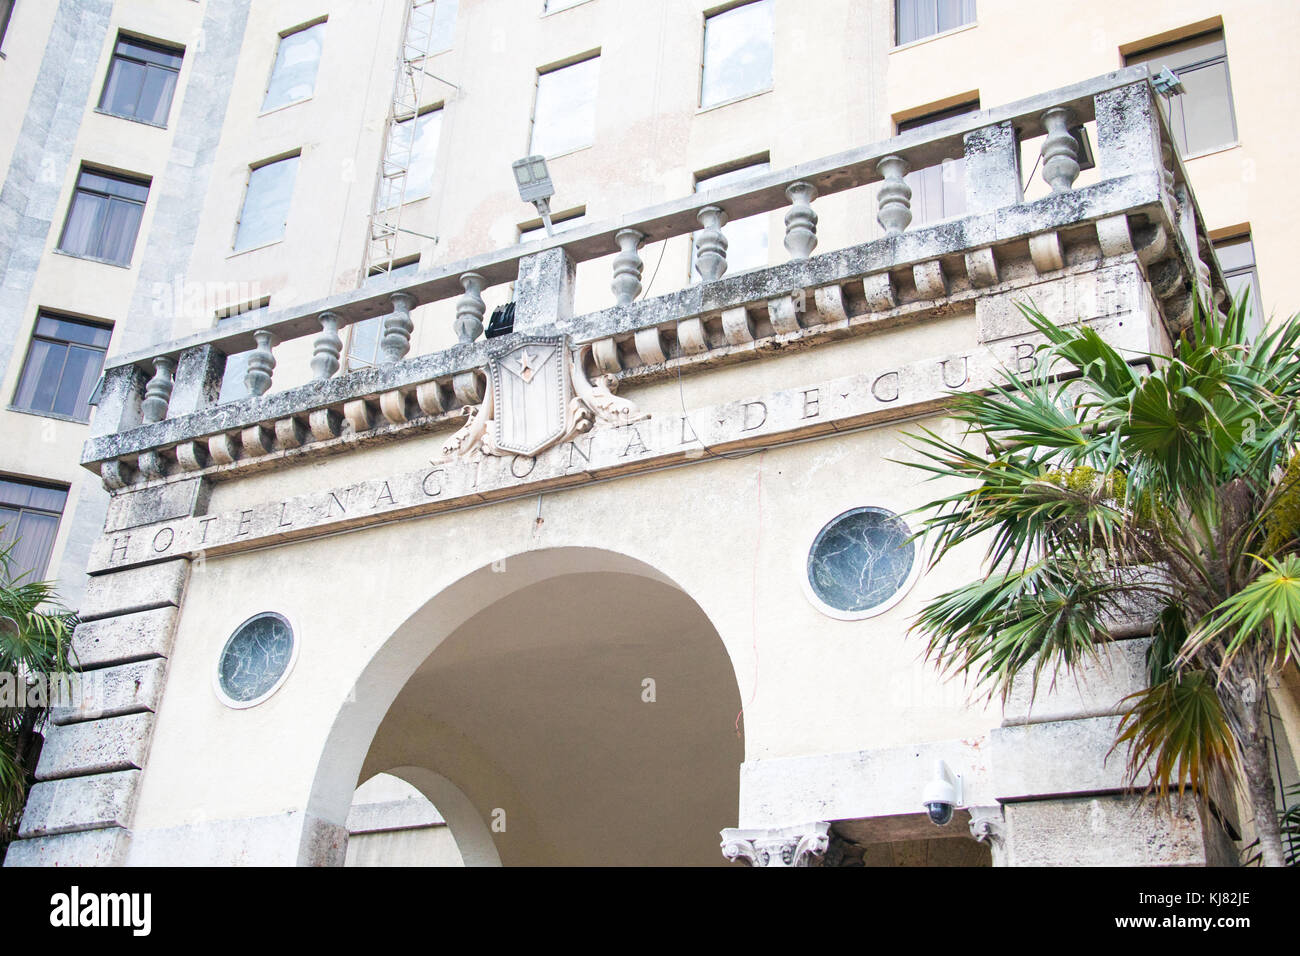 Hôtel Nacional de Cuba, La Havane, Cuba Banque D'Images